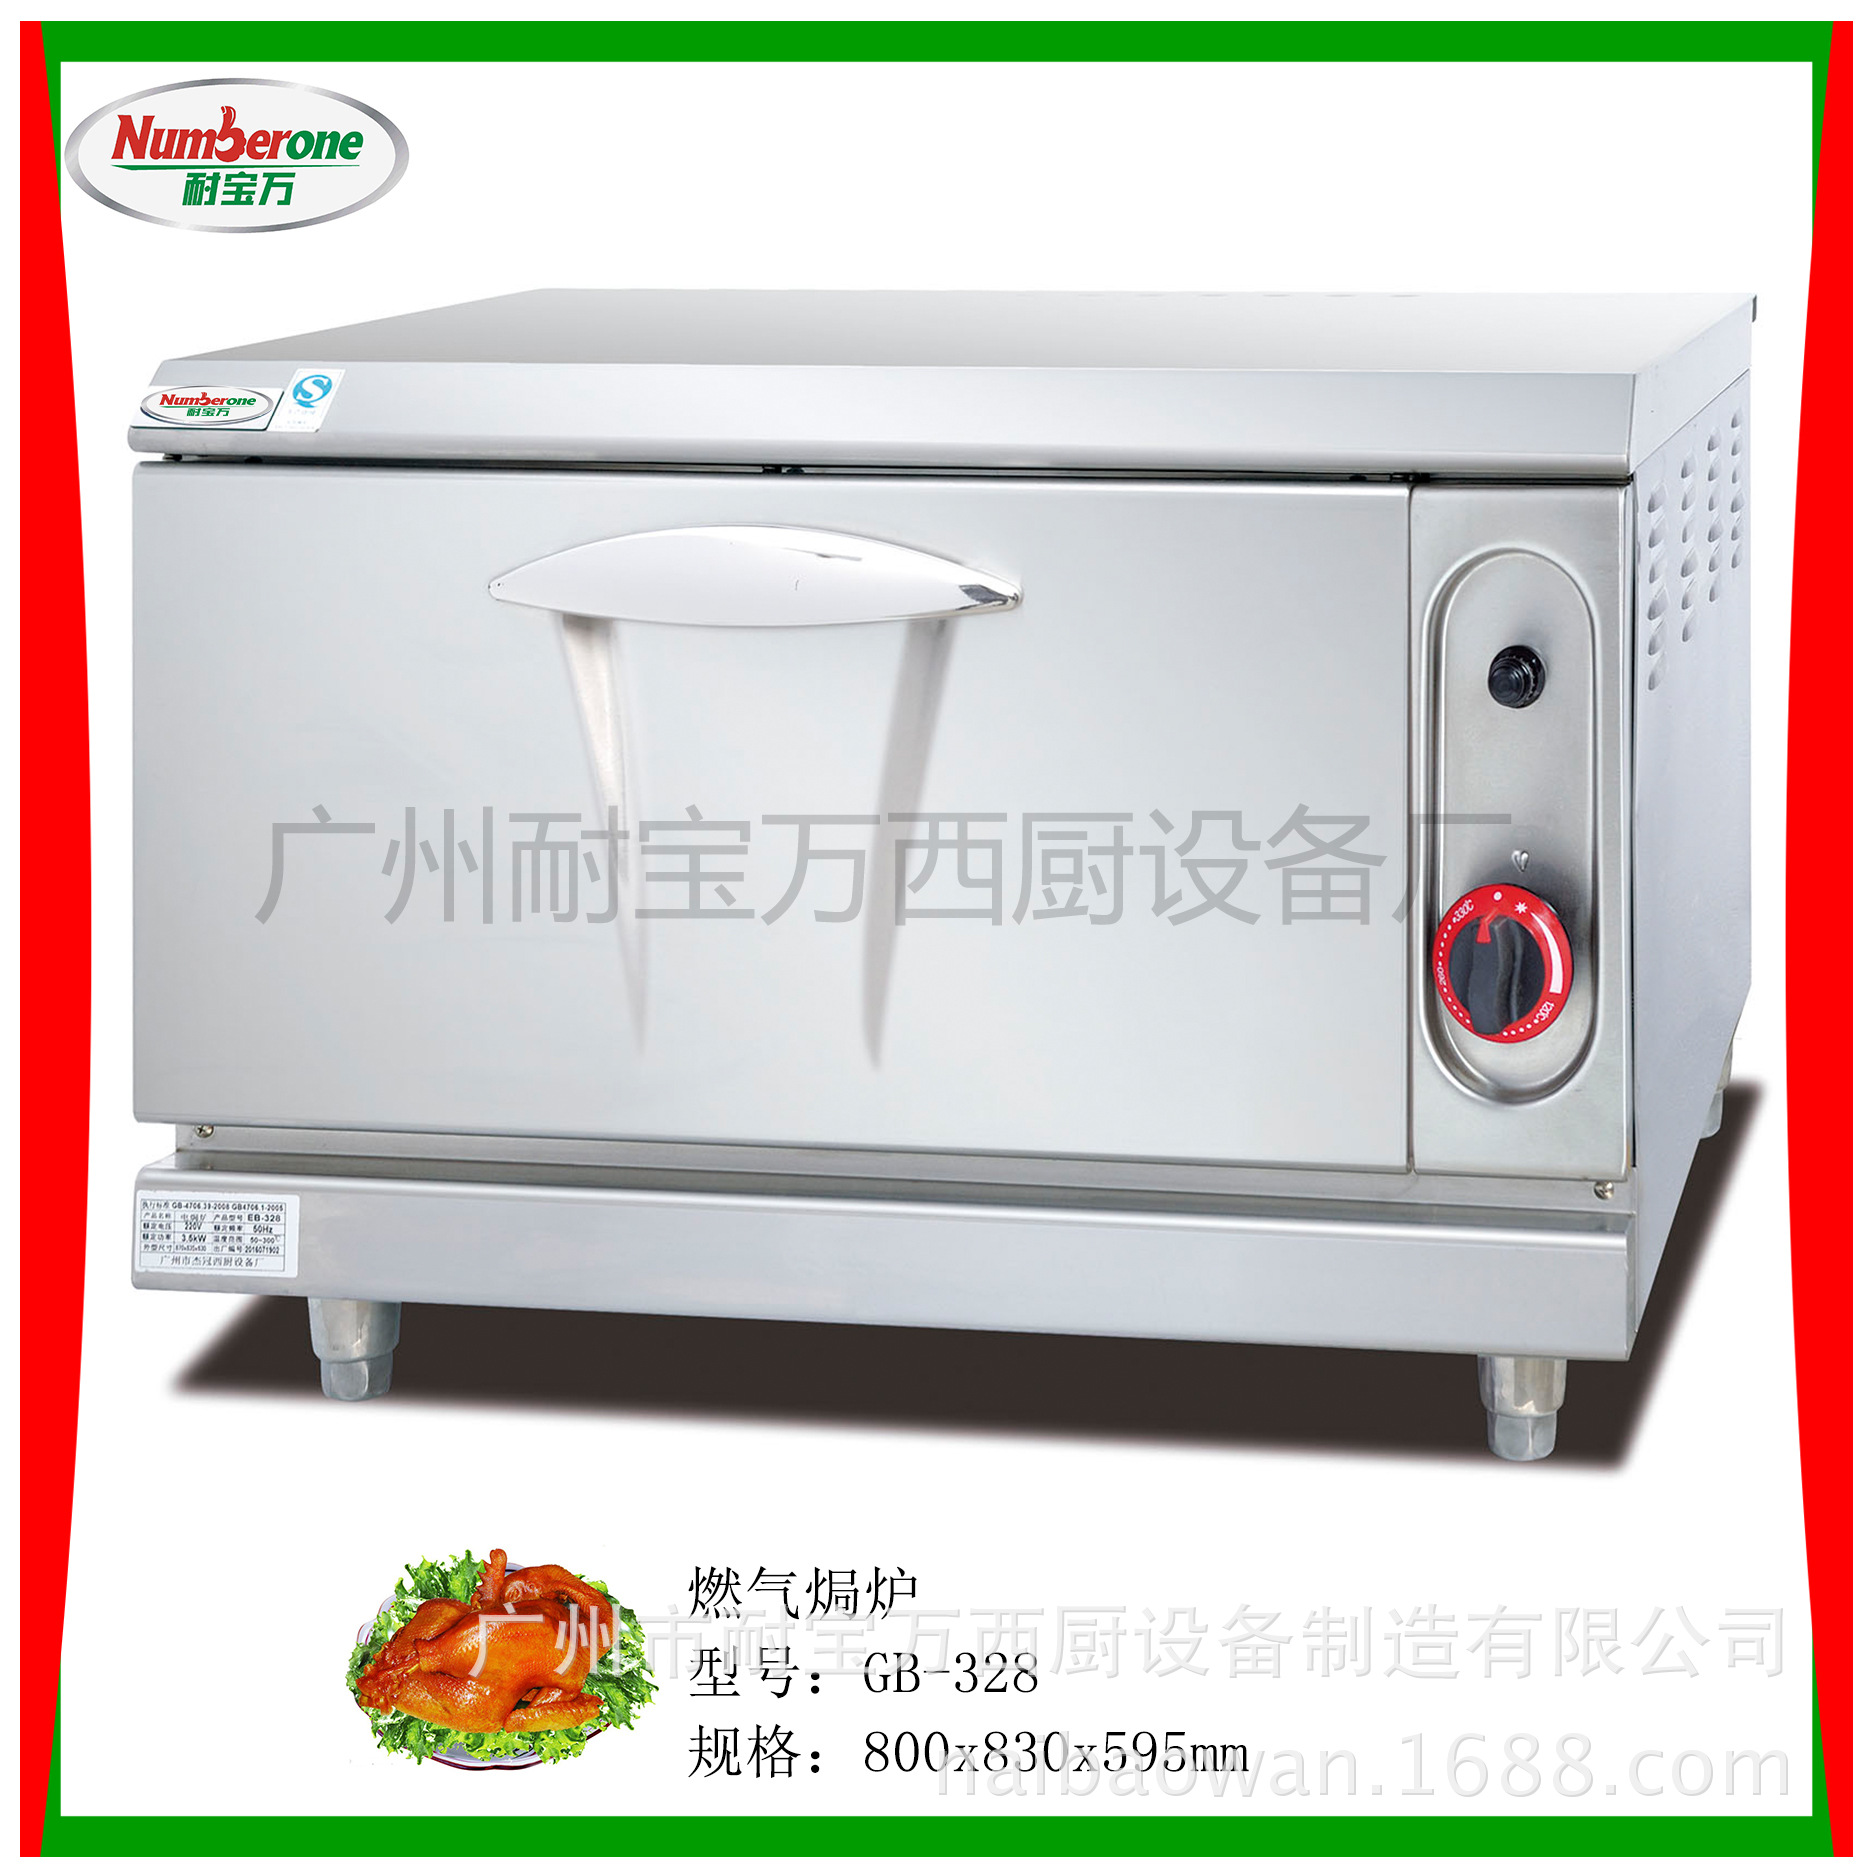 商用电焗炉 烘焙设备烤箱 炊事设备 质量保证电烤箱 烤箱设备